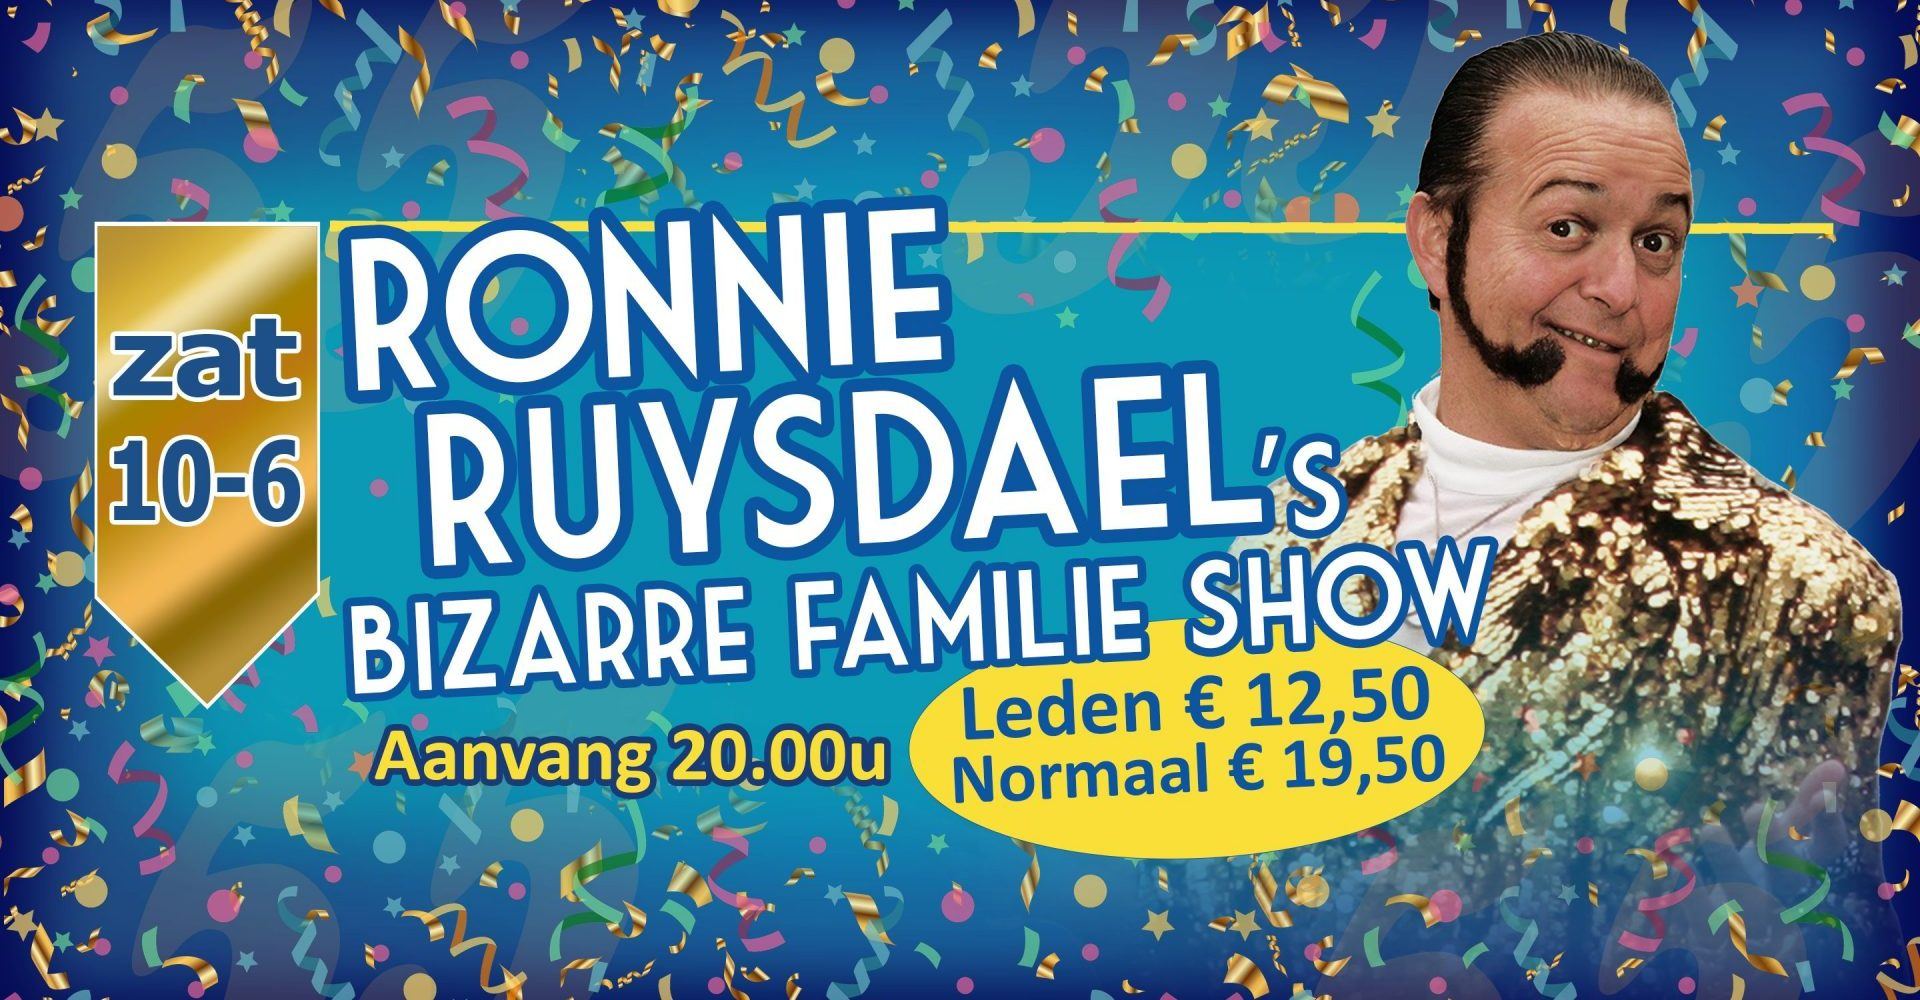 Ronnie’s bizarre familie show